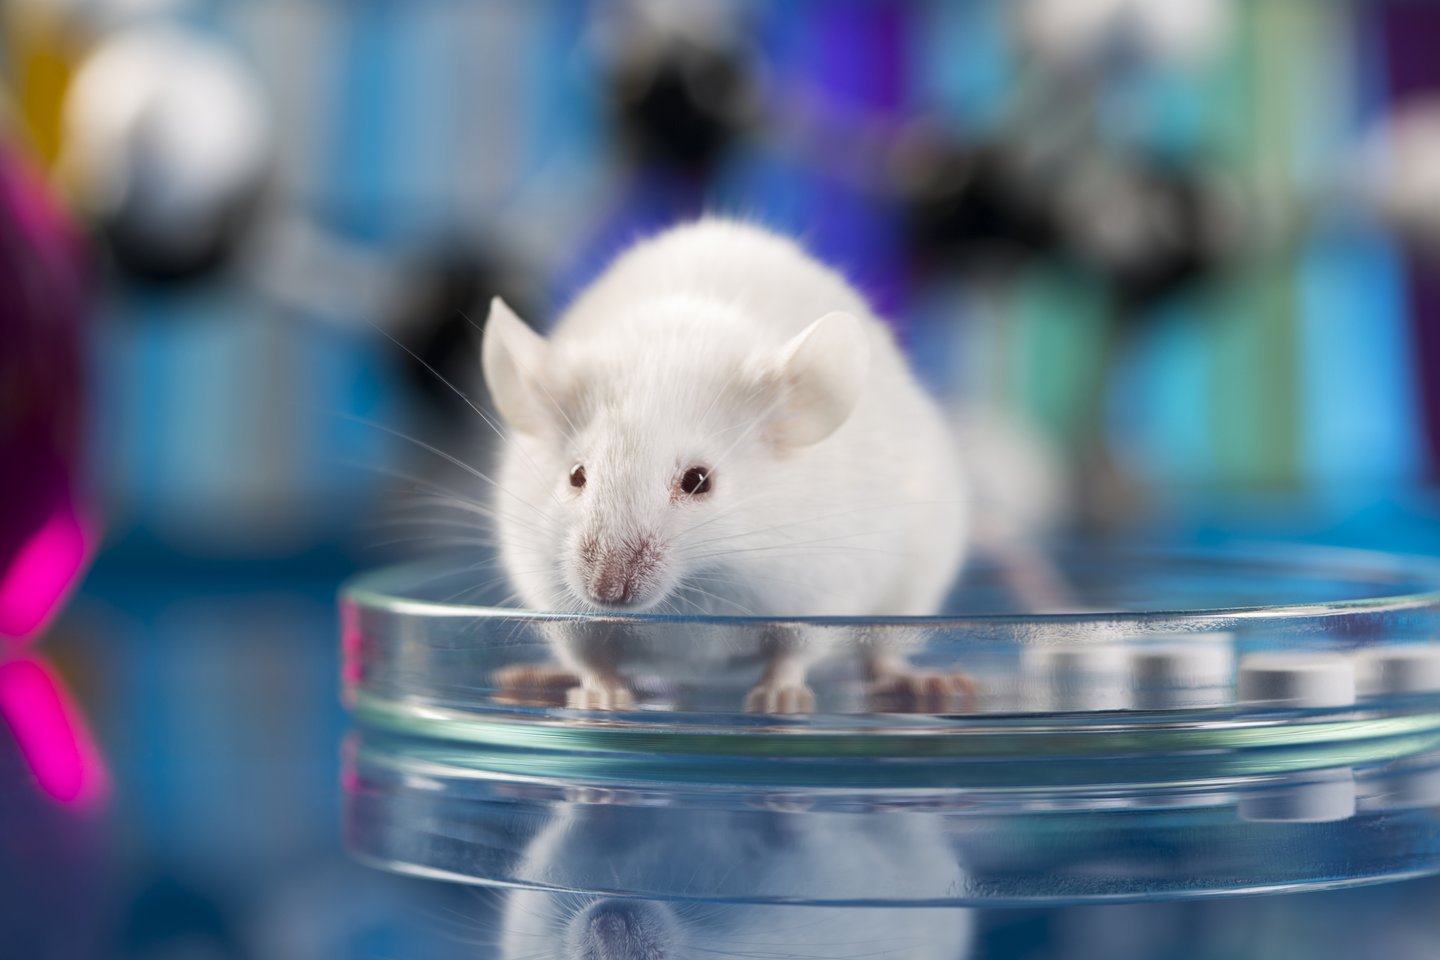  Itin mėgstamas 5G priešininkų pavyzdys – tyrimas su žiurkėmis, kurio rezultatai parodė, jog jei žiurkė buvo apšvitinta elektromagnetinėmis bangomis, jos tikimybė susirgti vėžiu padidėjo. Bet pamirštama, tai kad ši apšvitintų žiurkių grupė ir gyveno ilgiausiai. <br> 123RF nuotr.